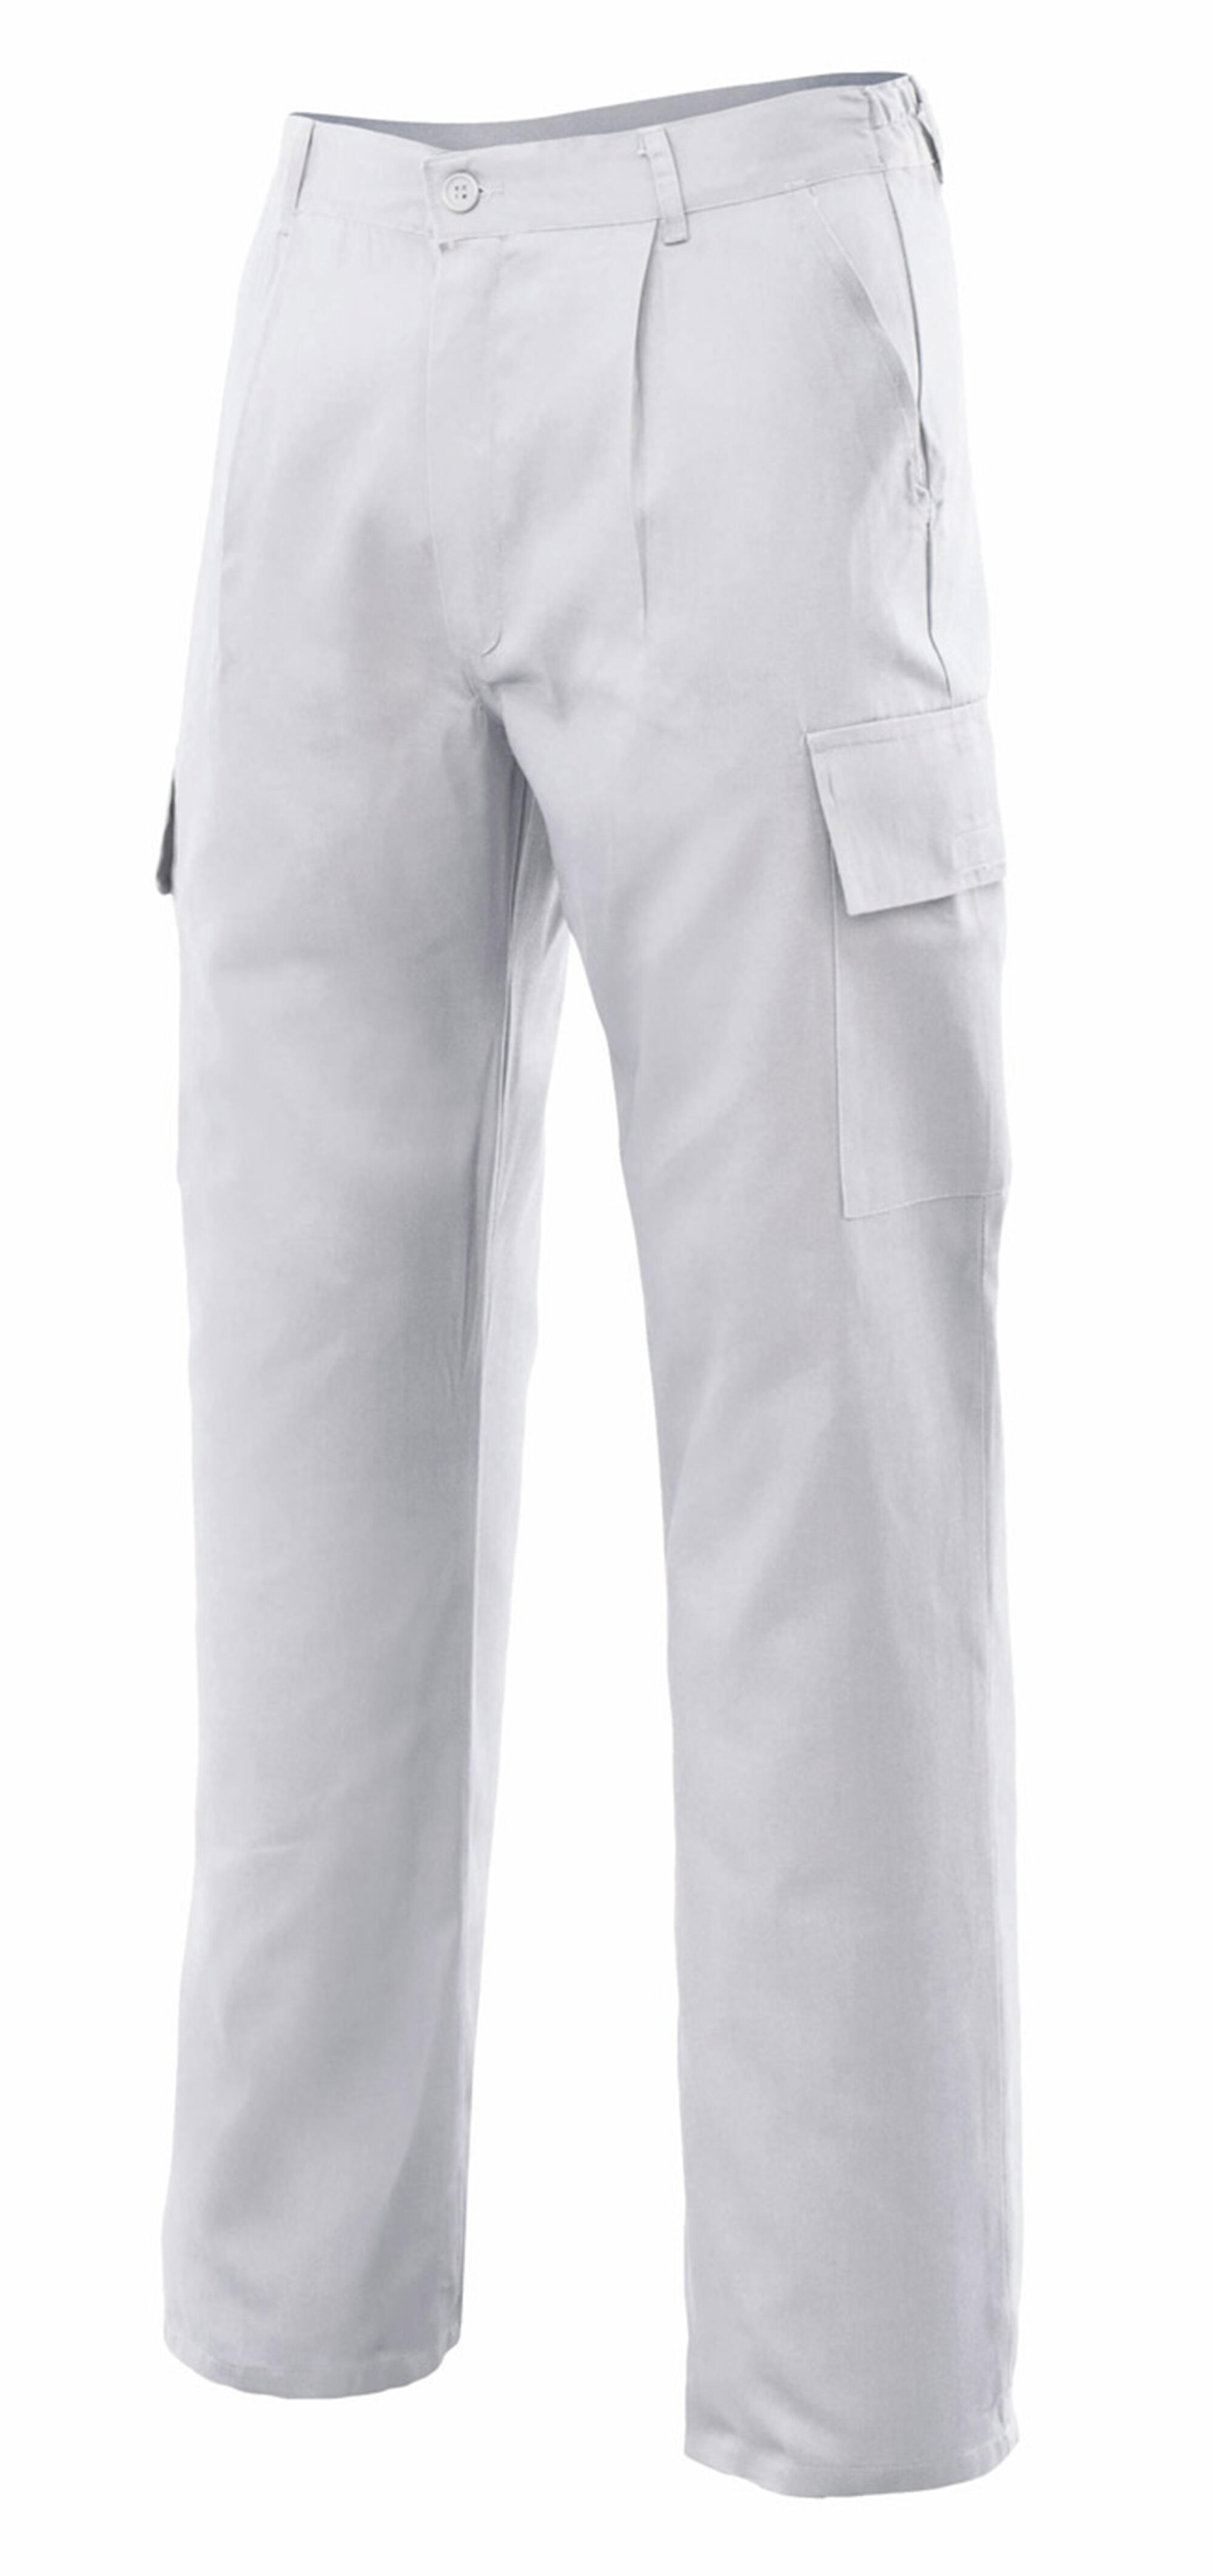 Pantalon de trabajo vertice multibolsillo blanco t52